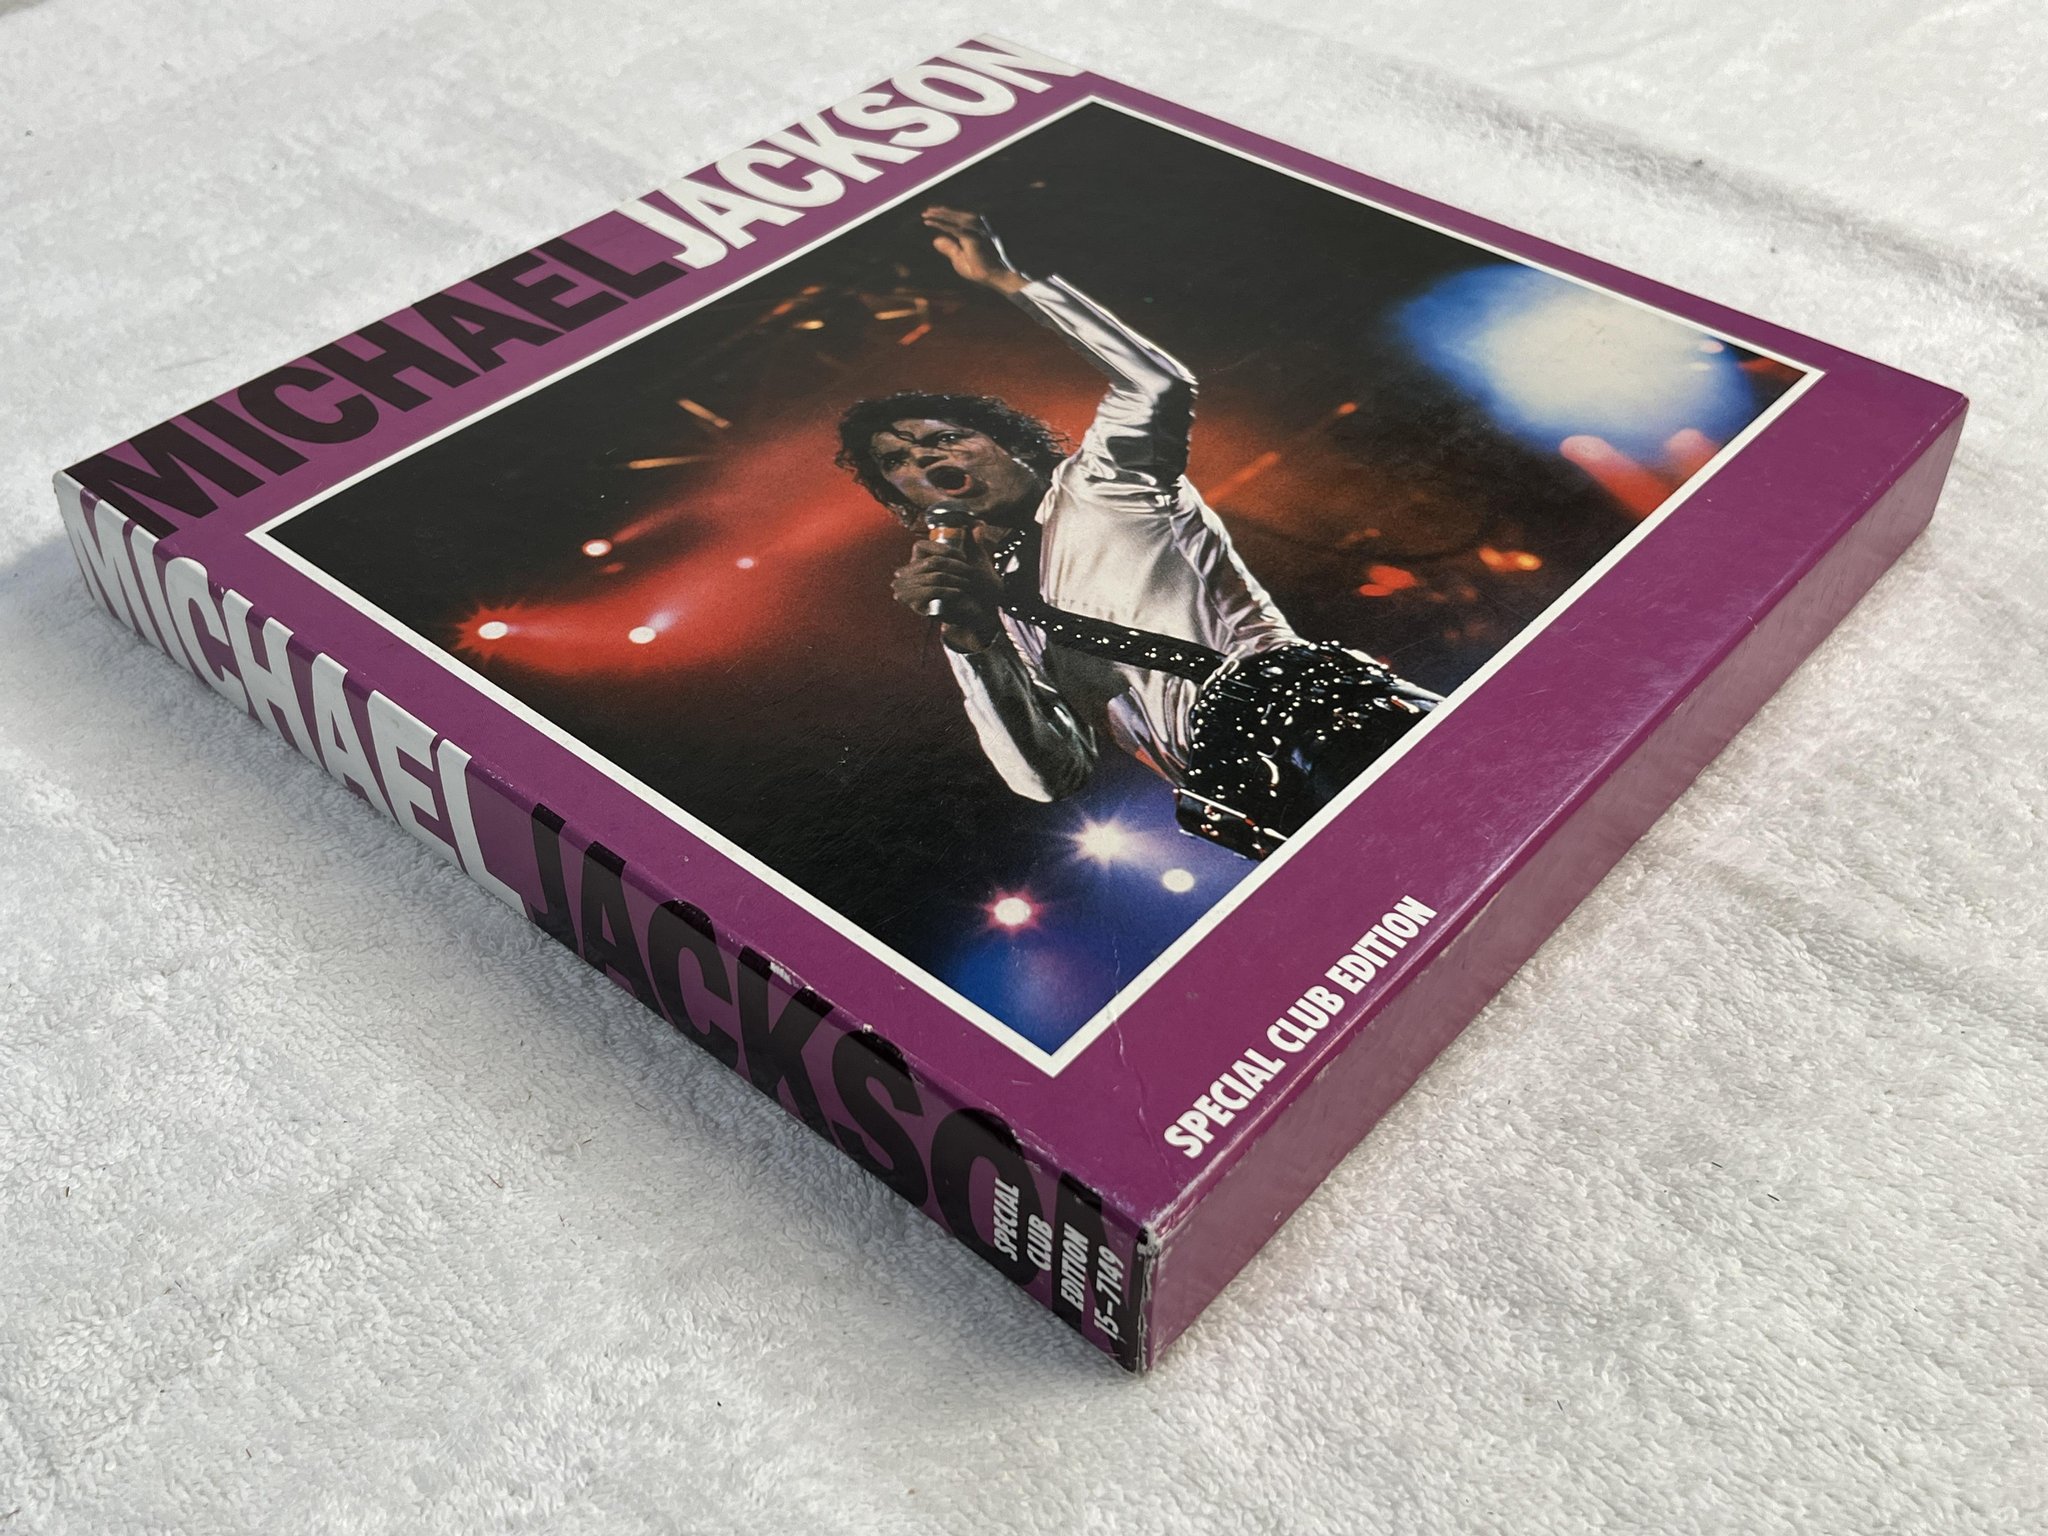 Omslagsbild för skivan MICHAEL JACKSON special club edition LP box set -8? Scandinavian Music 15-7149